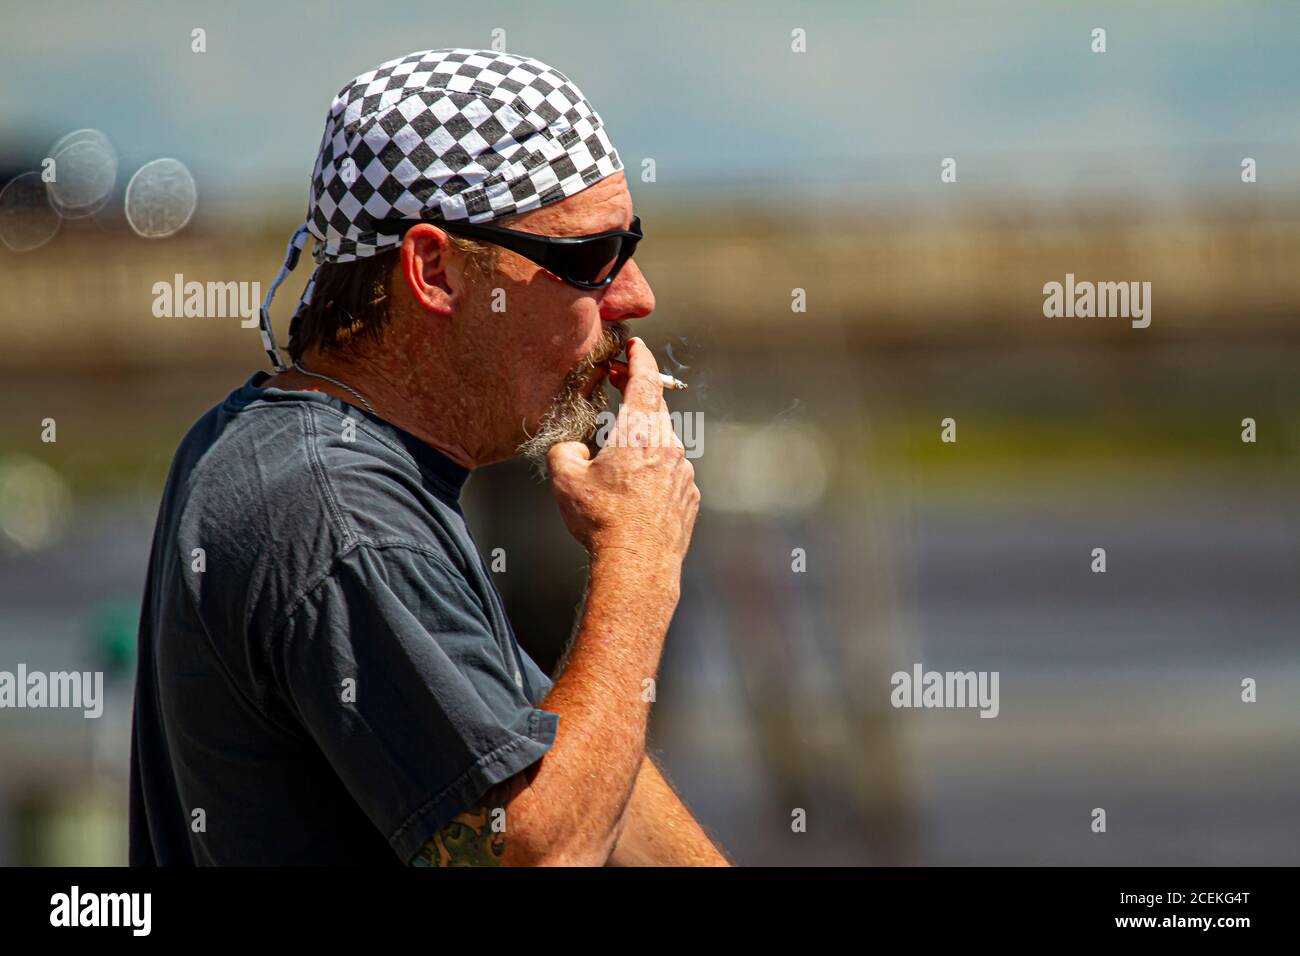 Chestertown, MD, USA 08/30/2020: Profilbild eines kaukasischen Rockers  mittleren Alters mit Schachbrettmuster-Bandanna und Sonnenbrille ist  rauchig Stockfotografie - Alamy